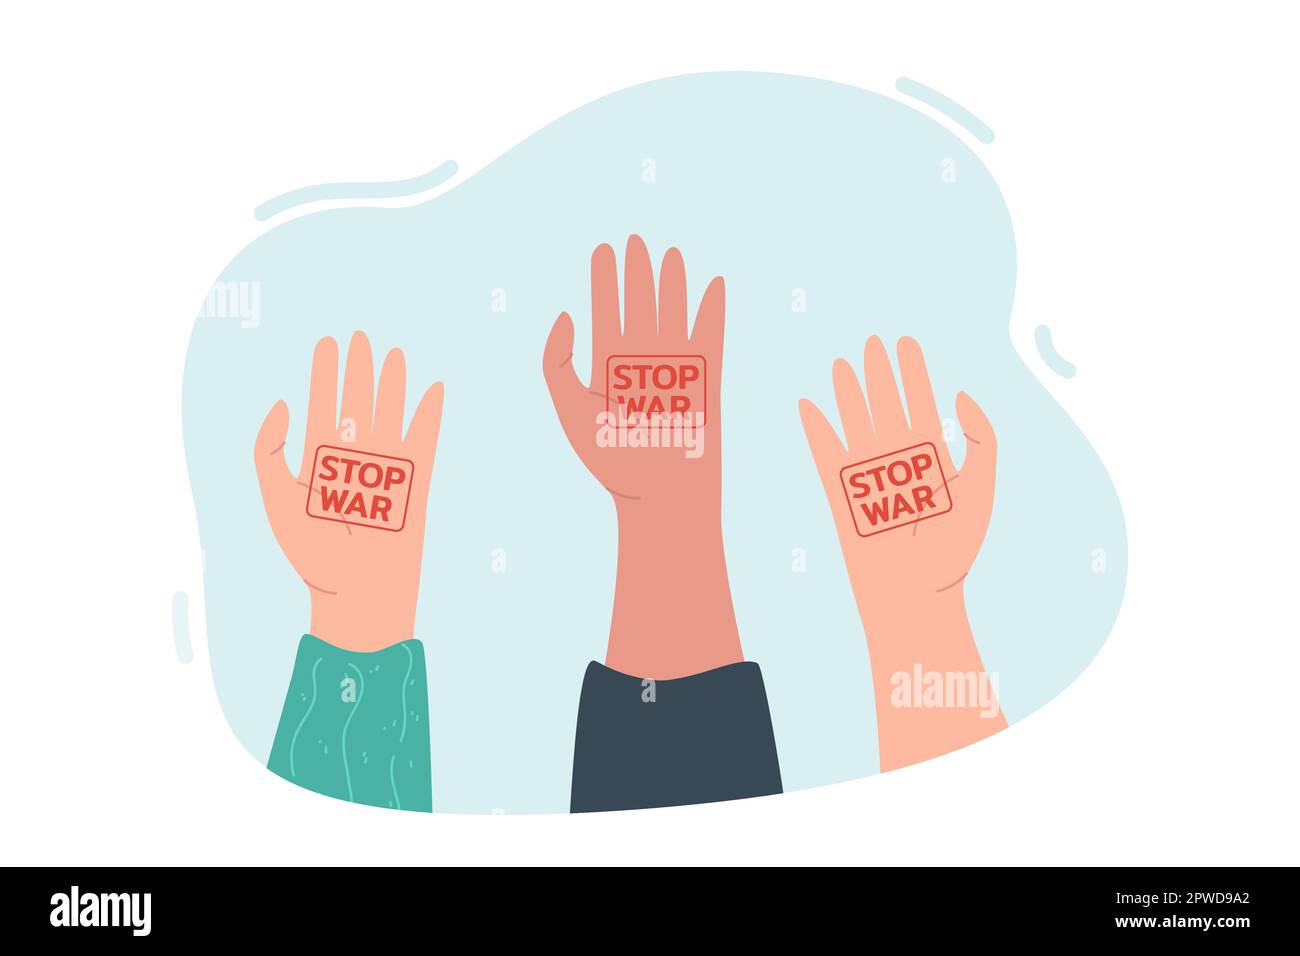 Menschliche Hände erheben sich mit Stoppzeichen auf Handflächen Stock Vektor